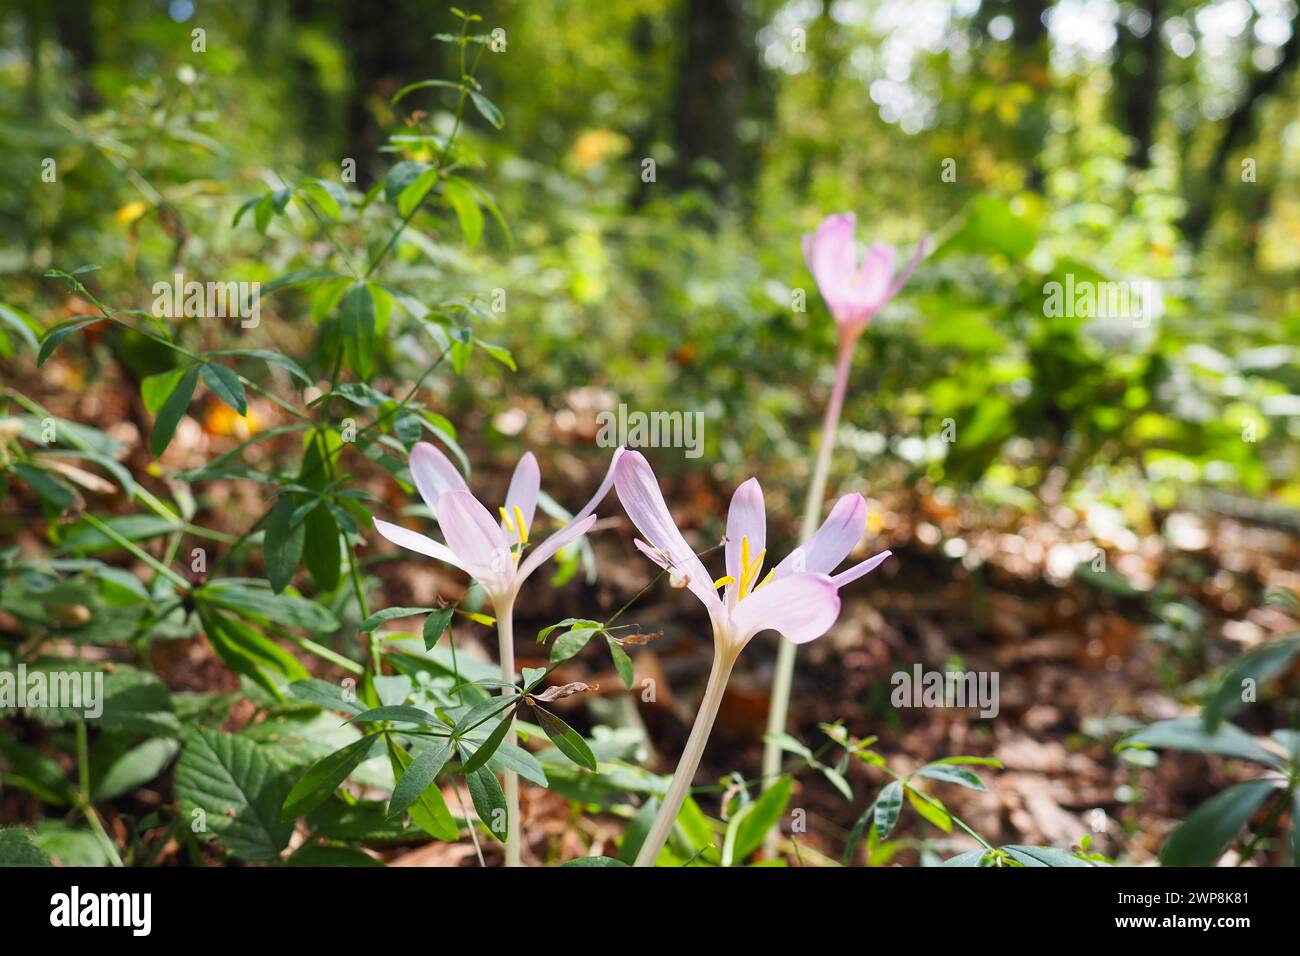 Colchicum autumnale, commonly known as autumn crocus, meadow saffron, is a poisonous autumn-flowering flowering plant that resembles true crocuses but Stock Photo